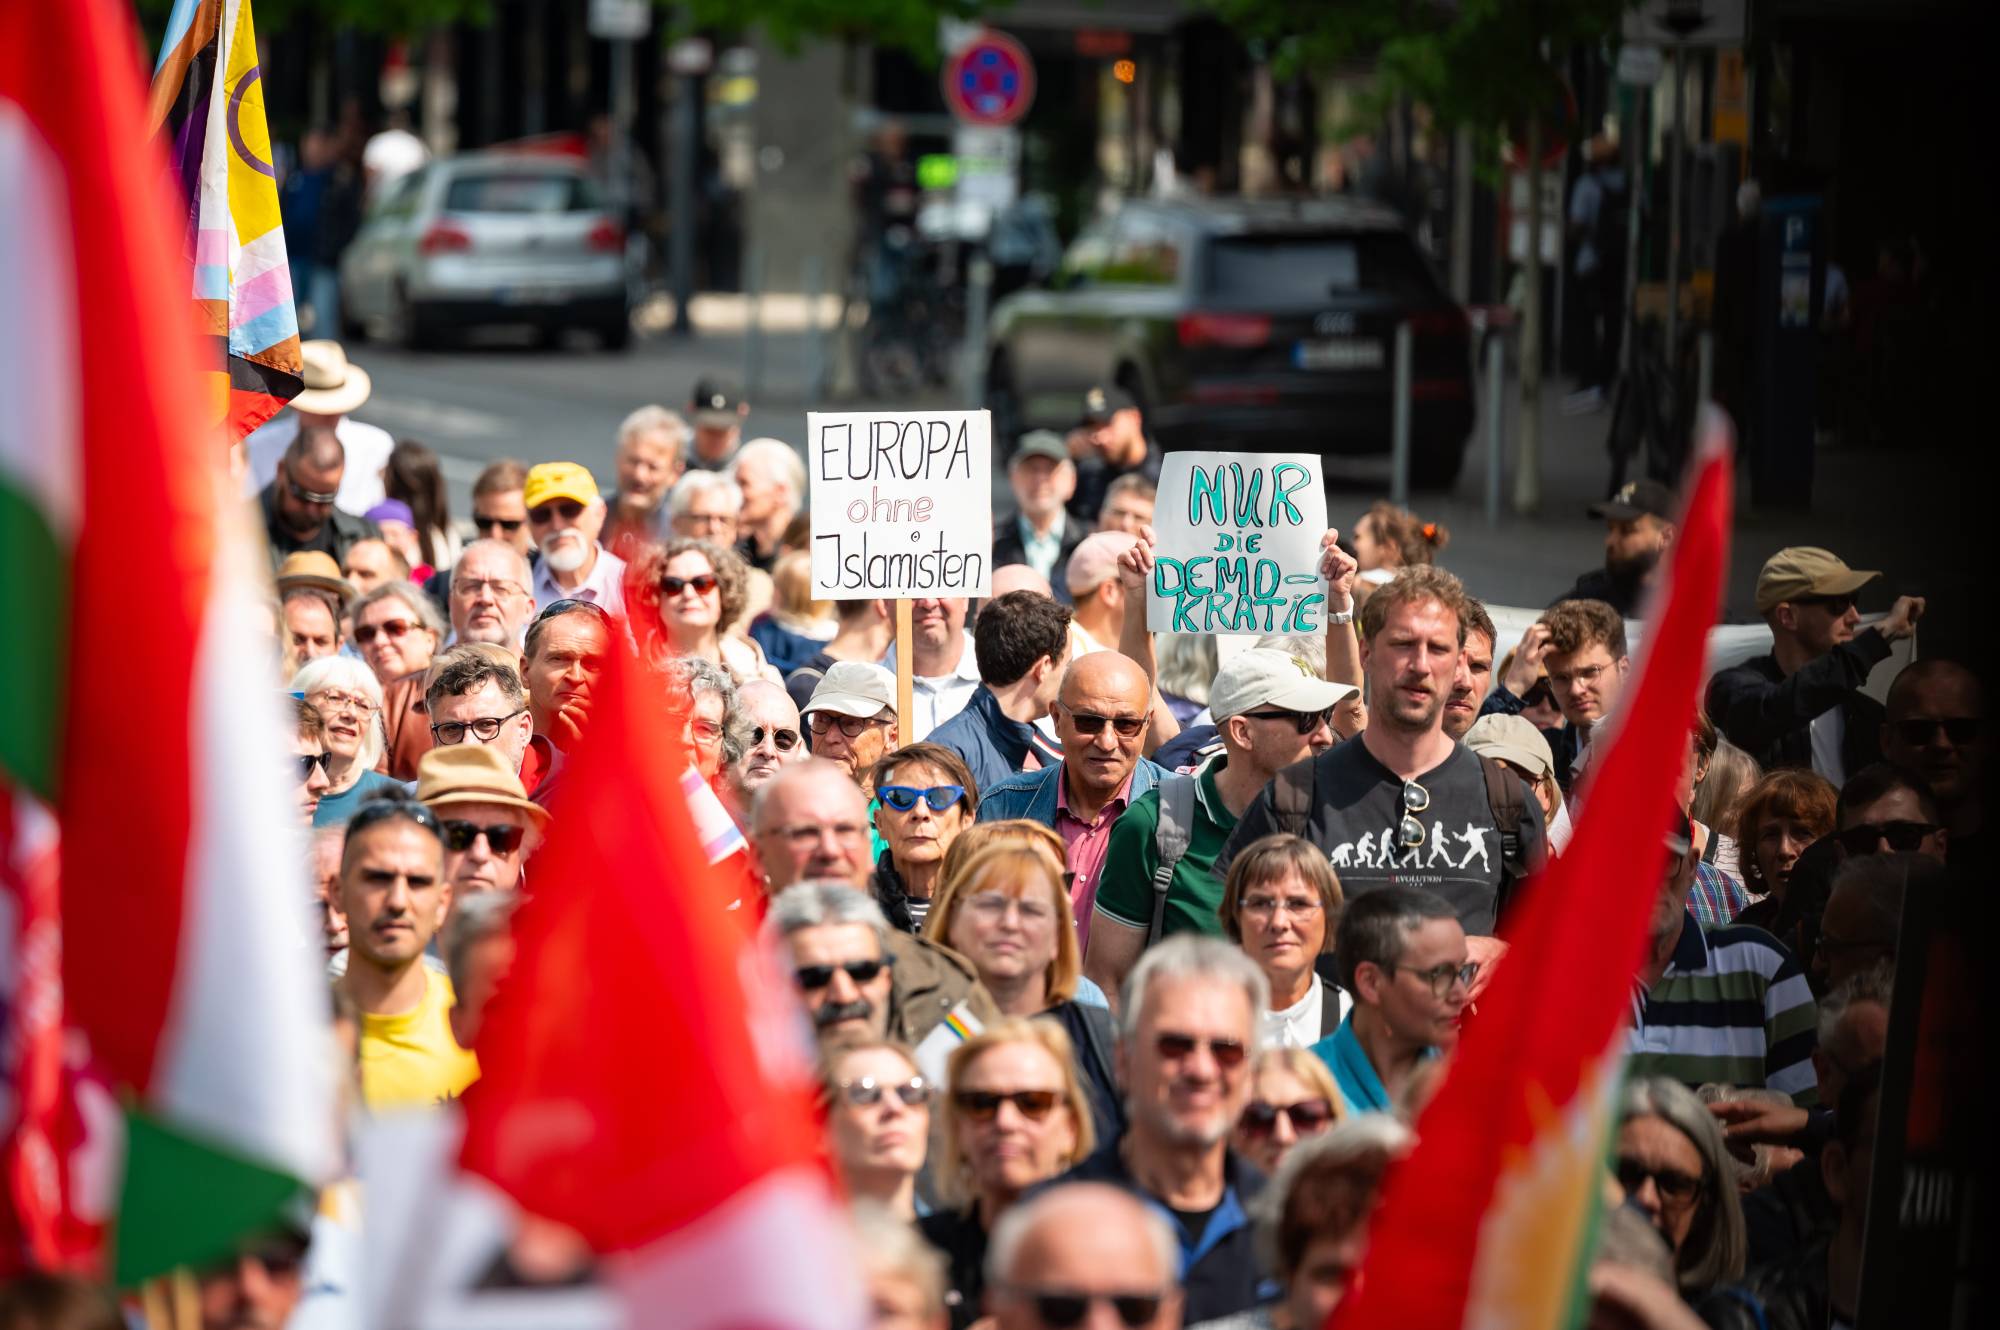 غضب في ألمانيا من تجمعات تدعو لتطبيق الشريعة في البلاد